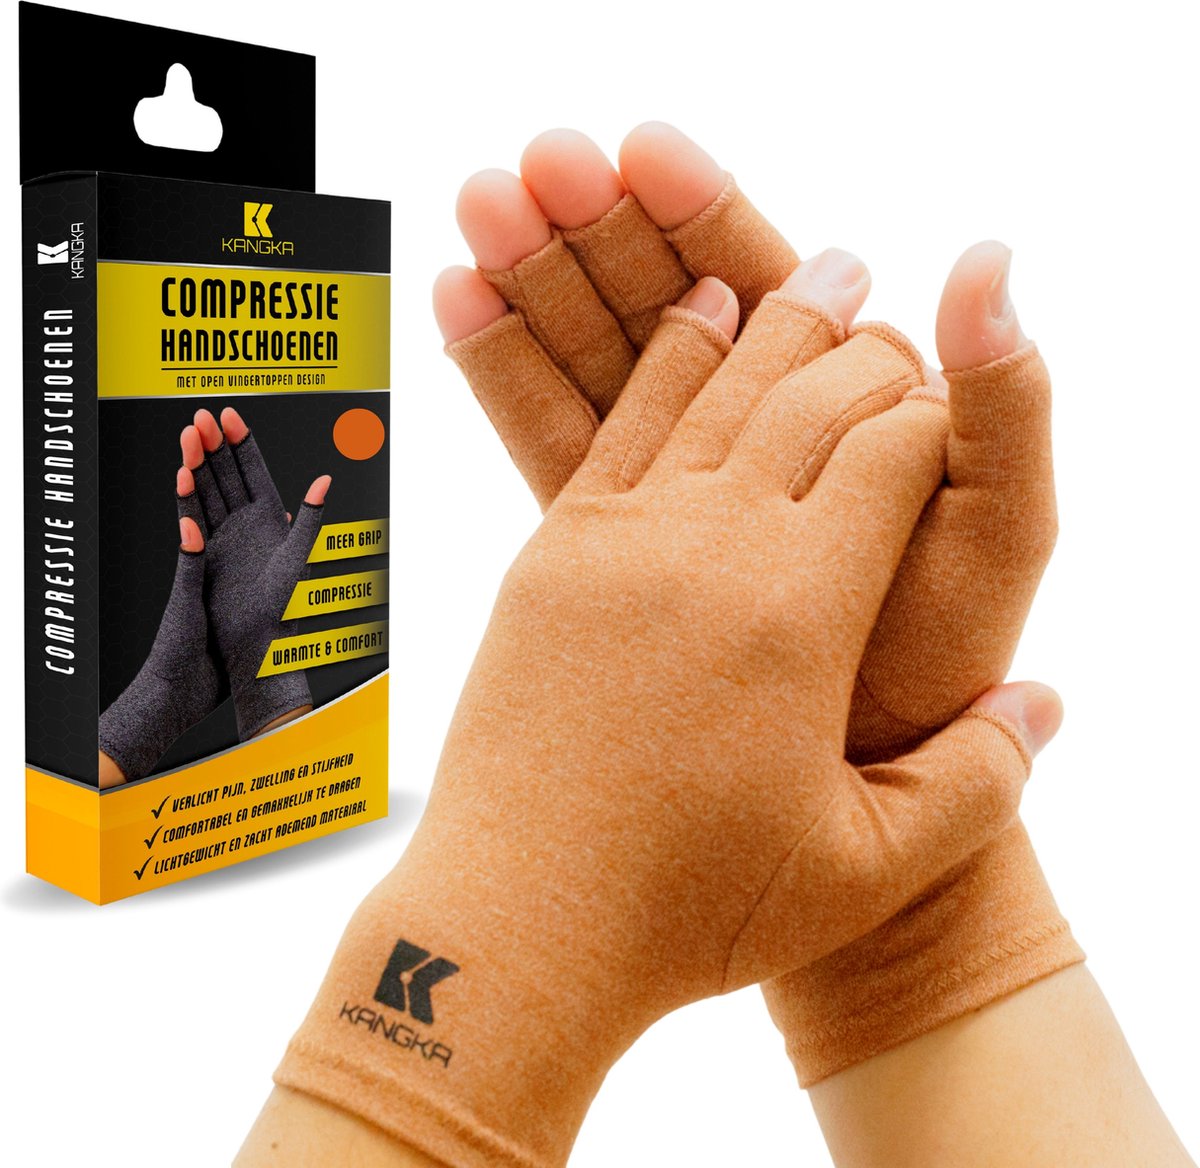 KANGKA® Reuma Artritis Handschoenen met Open Vingertoppen Maat S - Bruin - Thuiswerk Handschoen - Unisex